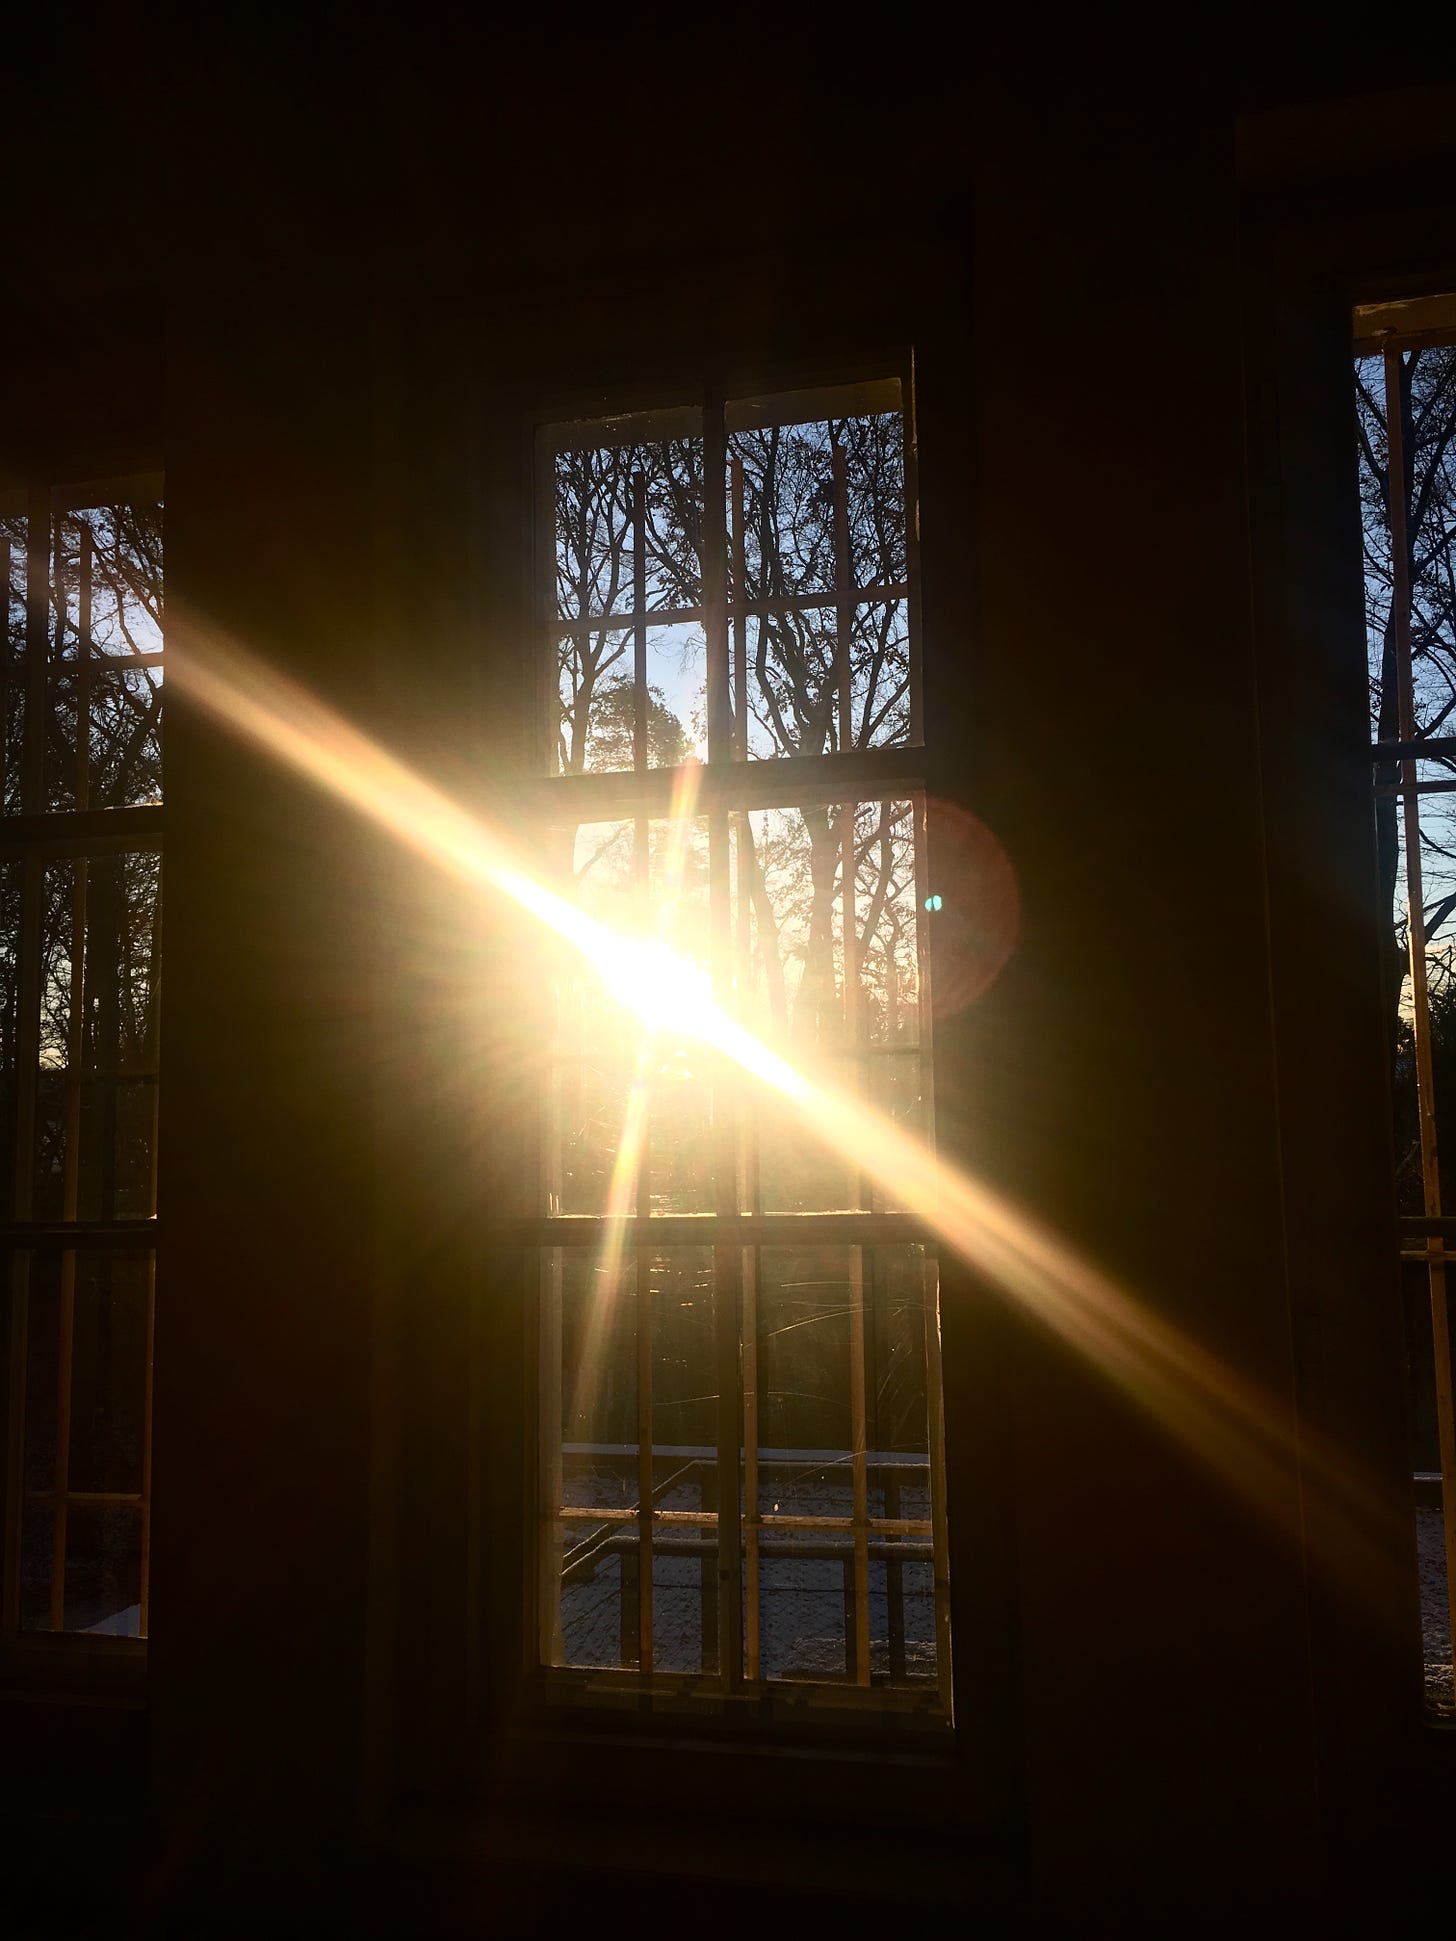 Das Bild zeigt Fenster, dahinter Bäume und blauen Himmel. Die Sonne scheint so durchs Fenster, dass ihre Reflektion auf dem Foto ein Kreuz bildet, das das Bild dominiert.